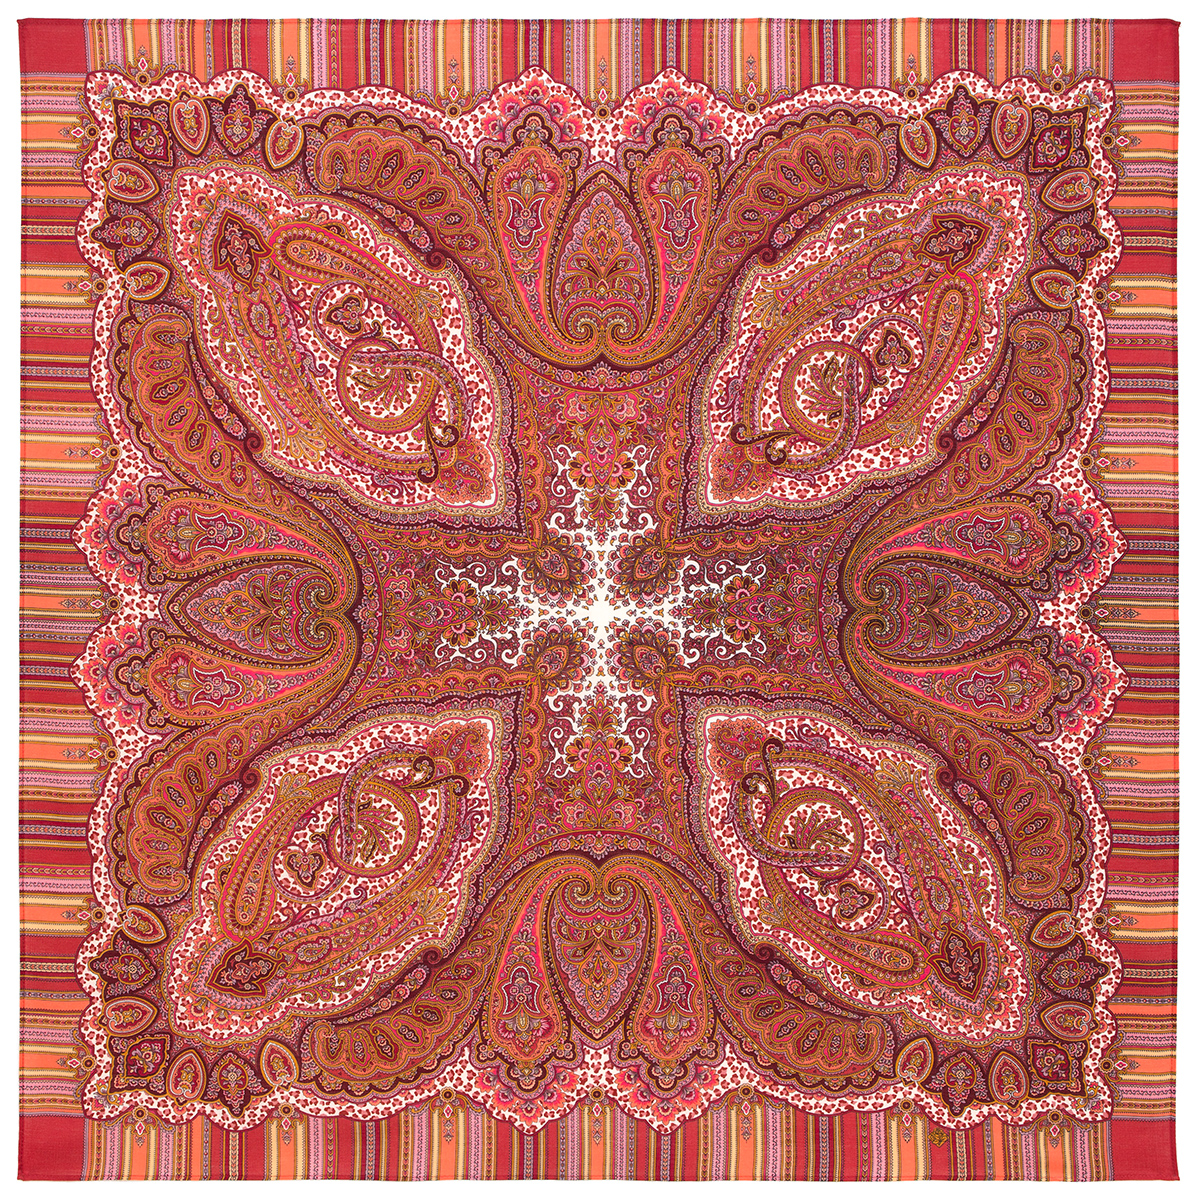 Платок женский Павловопосадский платок 1С125-4-ПН красный/оранжевый/розовый, 125х125 см